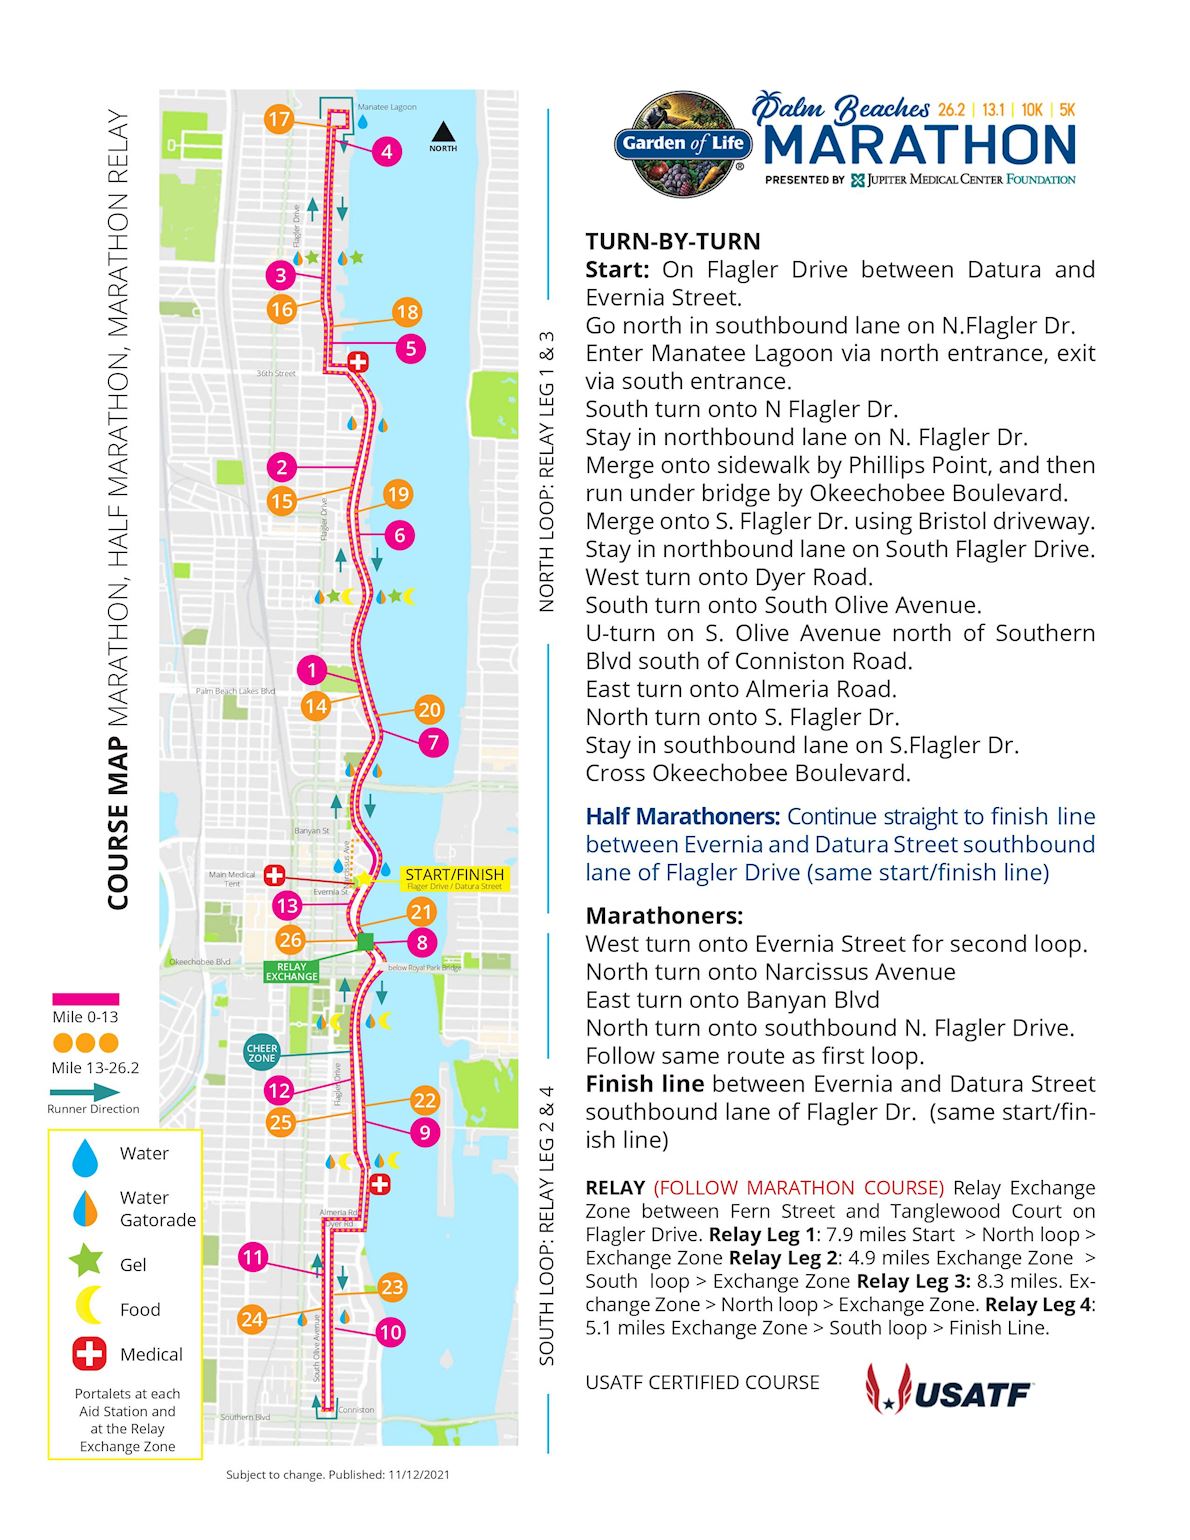 Garden of life Palm Beaches Marathon Mappa del percorso